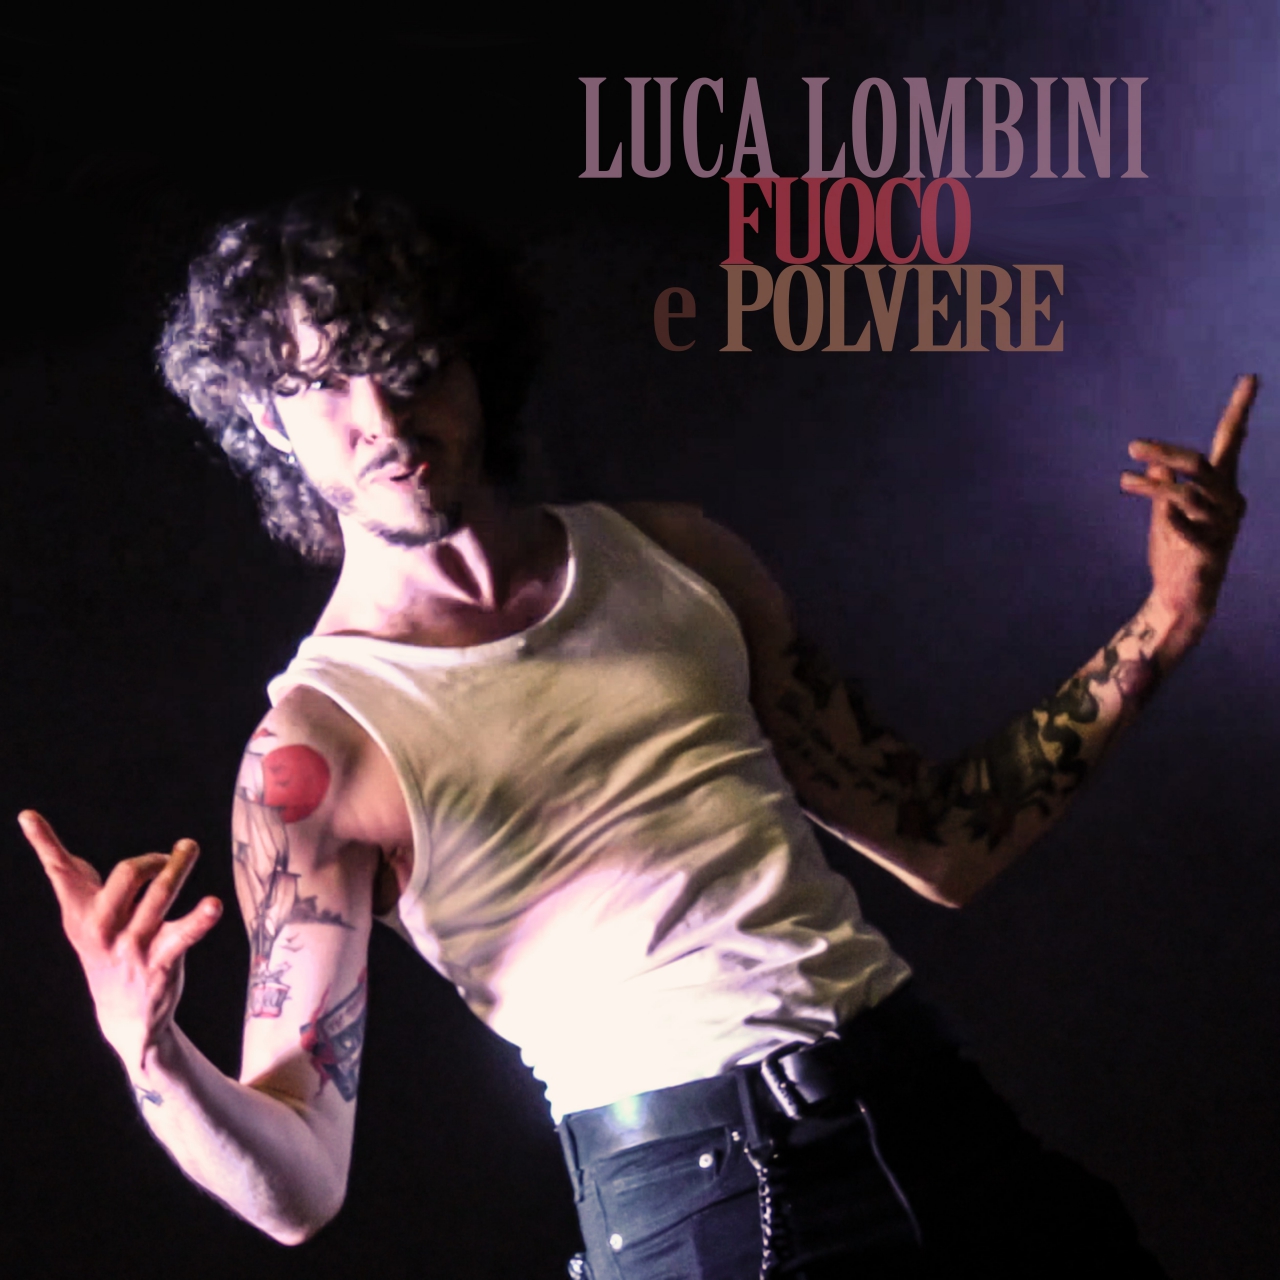 Debutto discografico per Luca Lombini con il brano Fuoco e Polvere